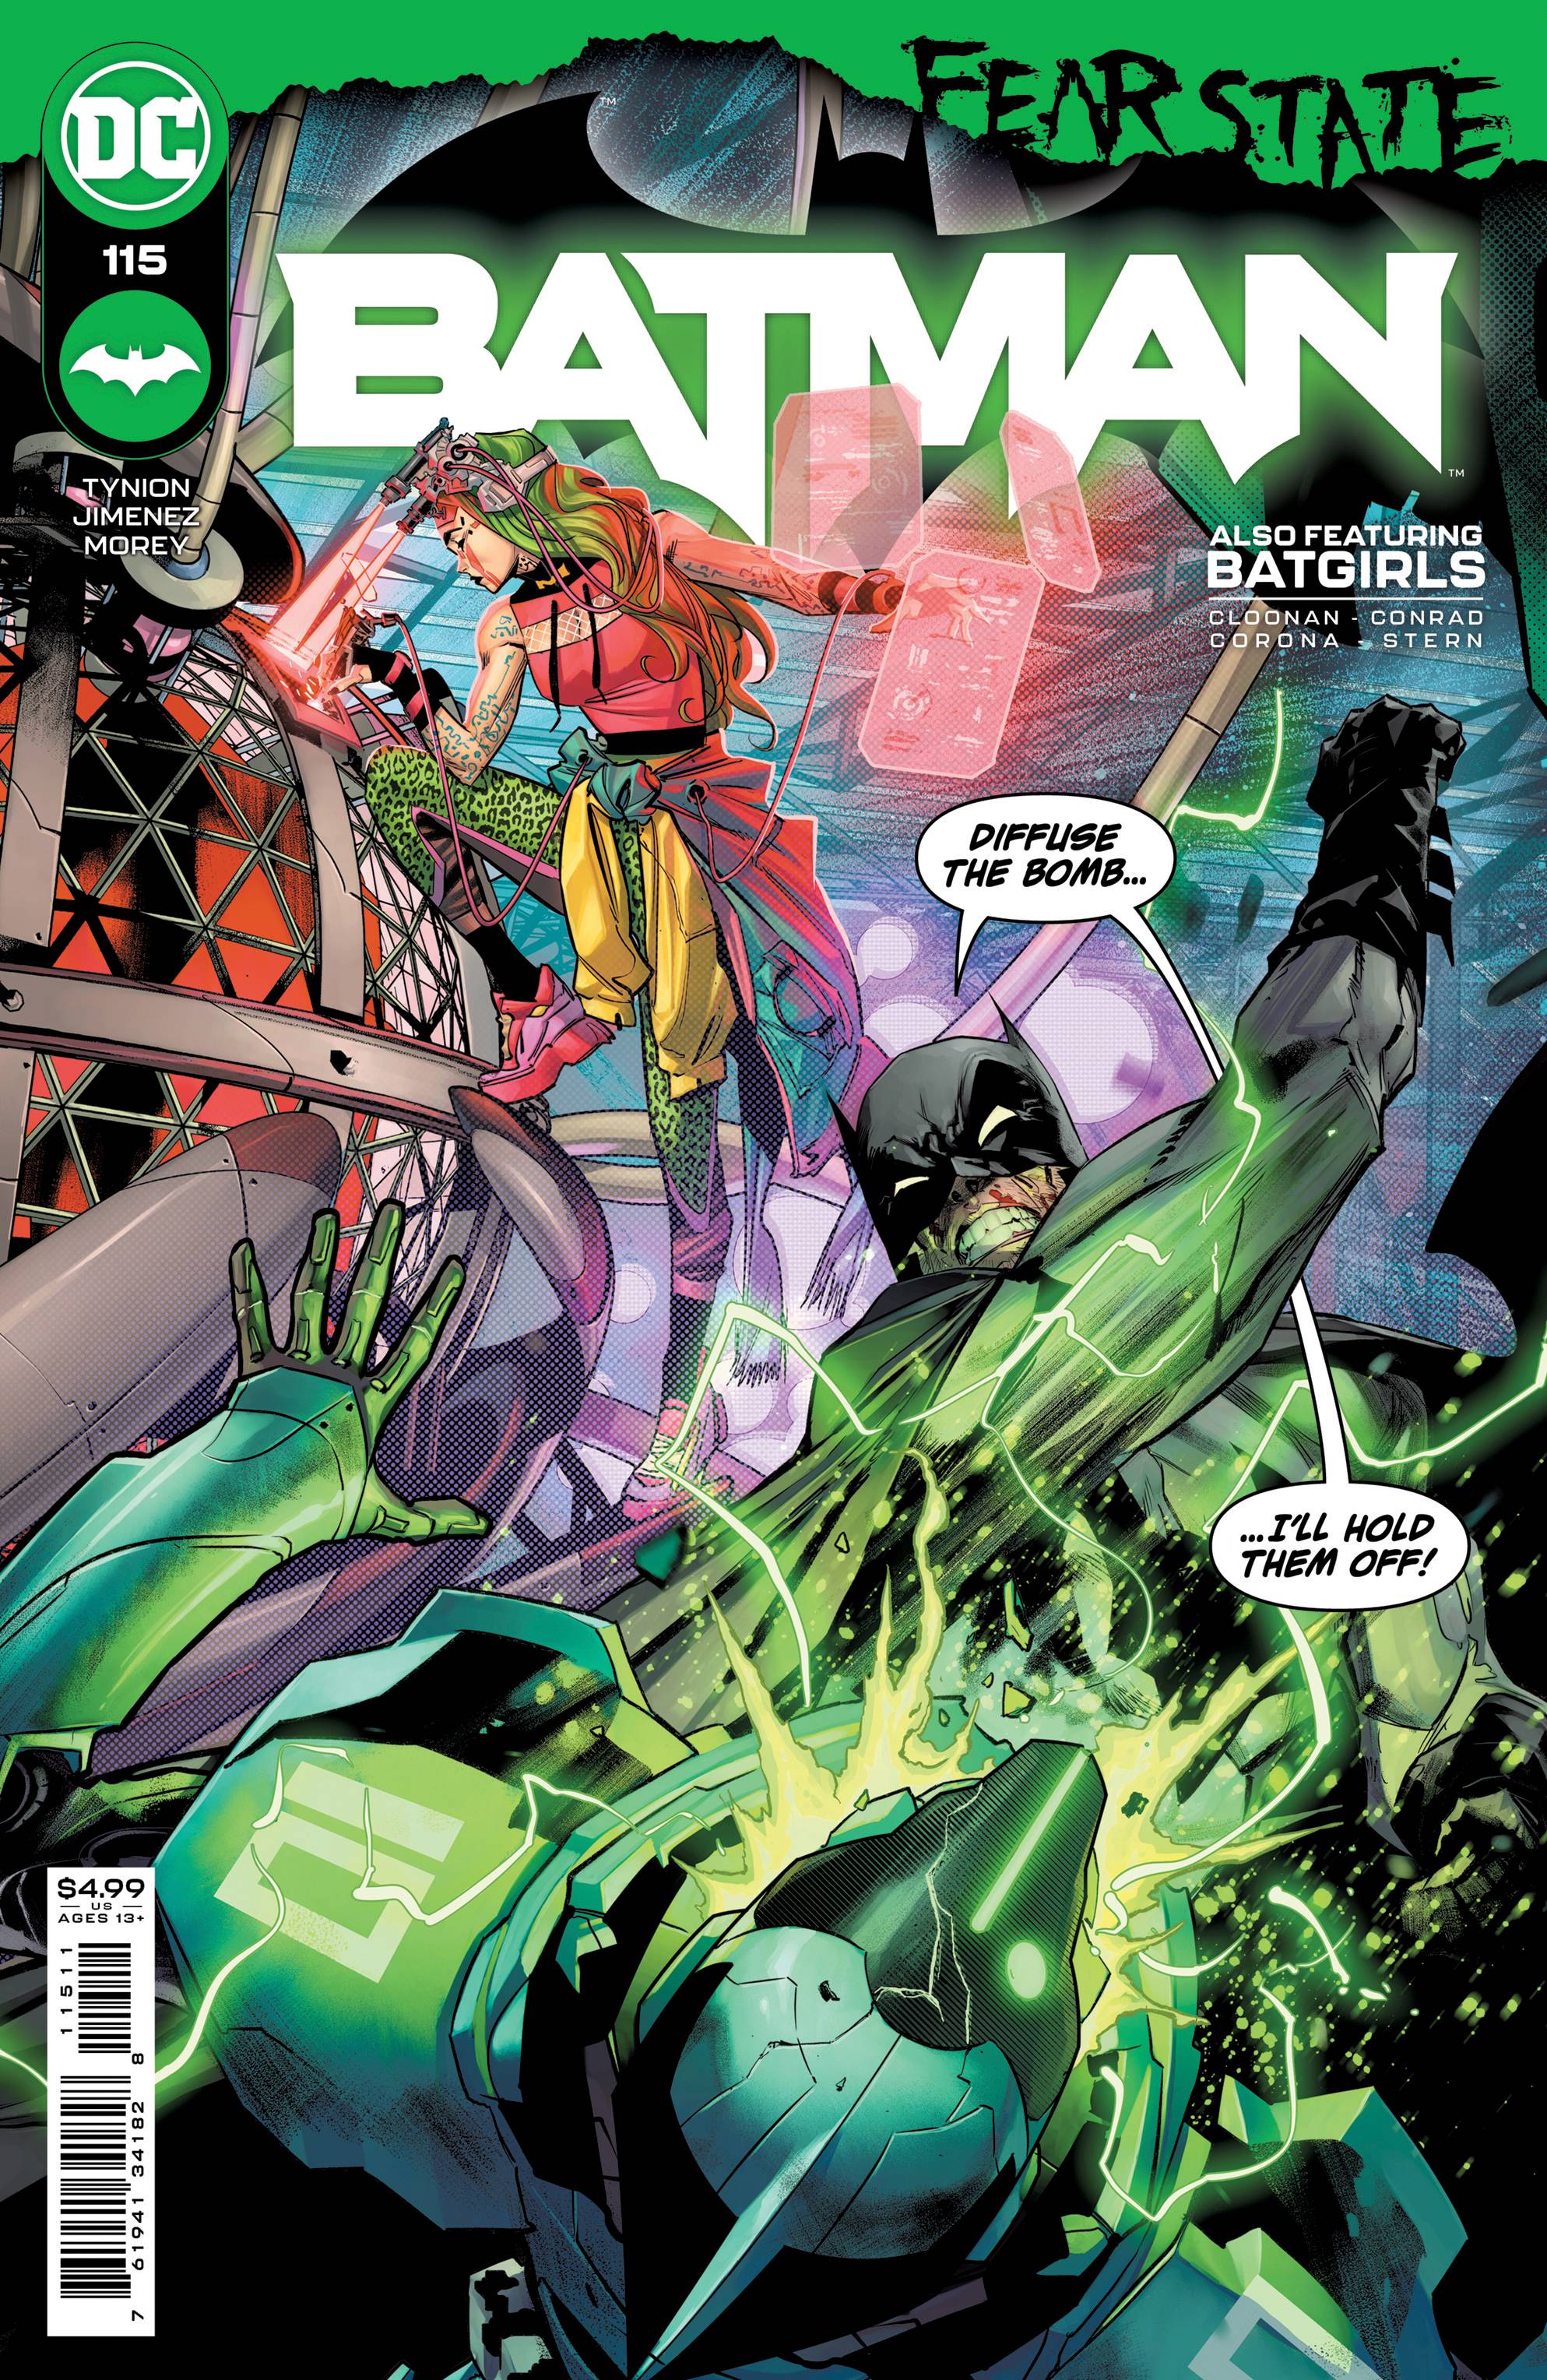 BATMAN #115 CVR A JORGE JIMENEZ | L.A. Mood Comics and Games